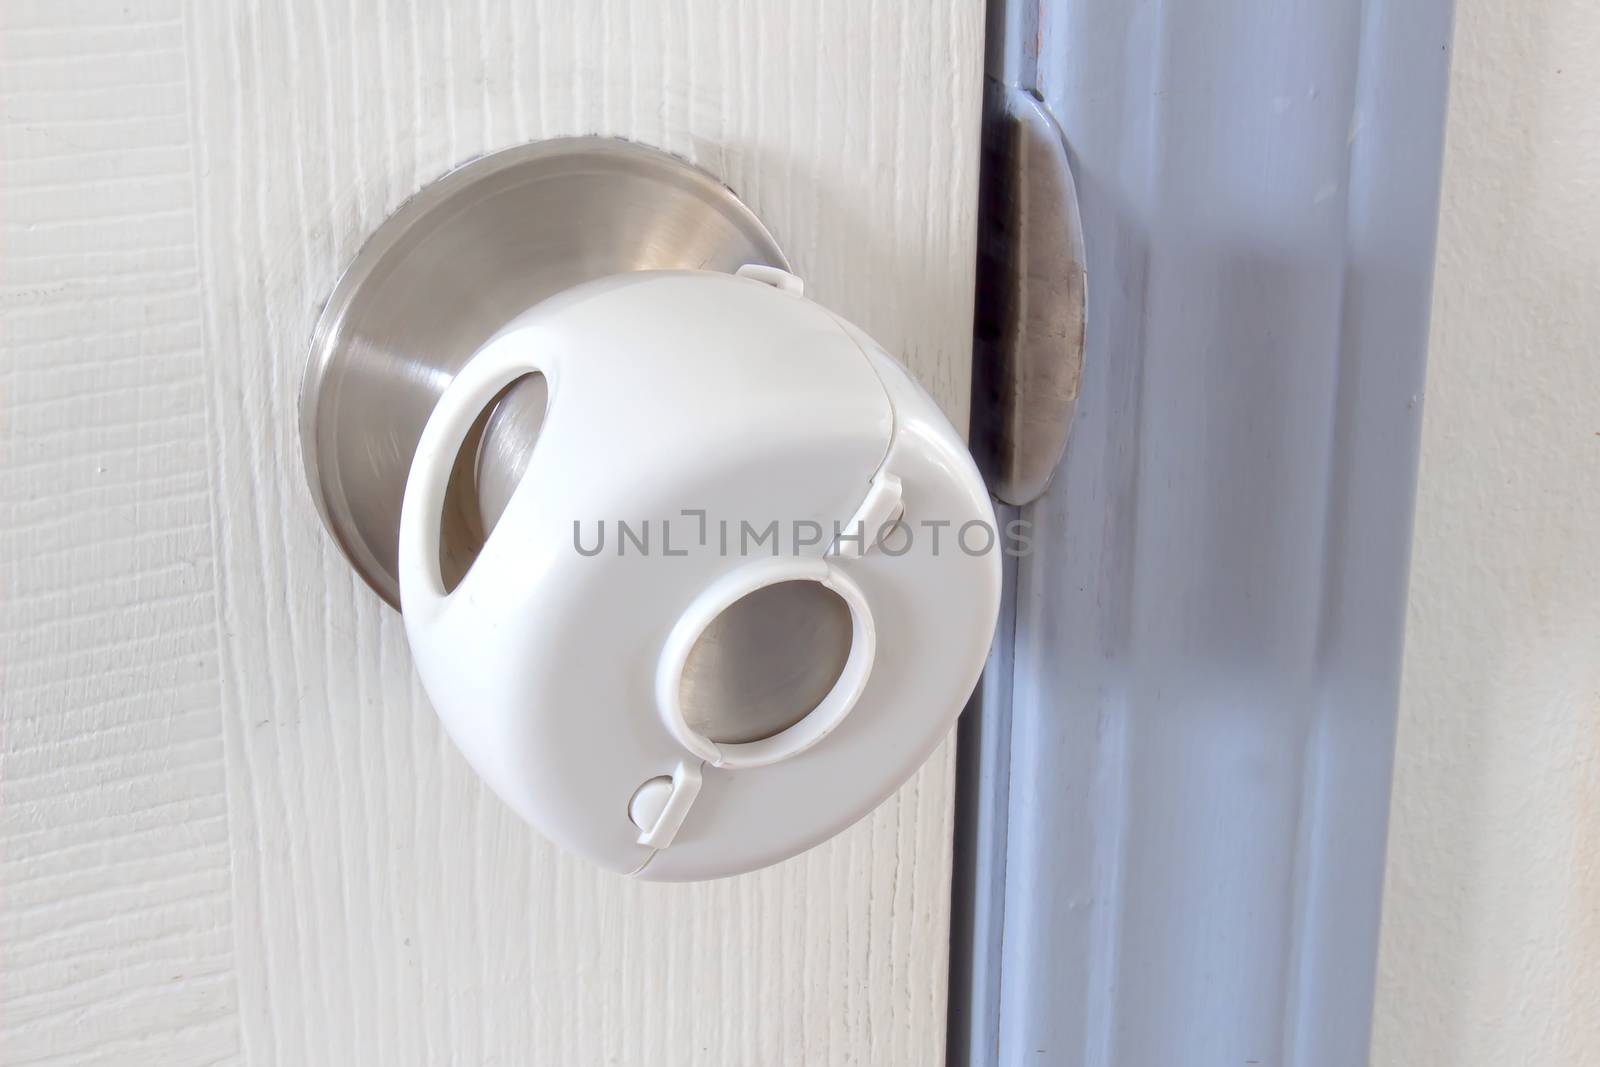 Child Proof Door Knob Covers over doorknob by oasisamuel